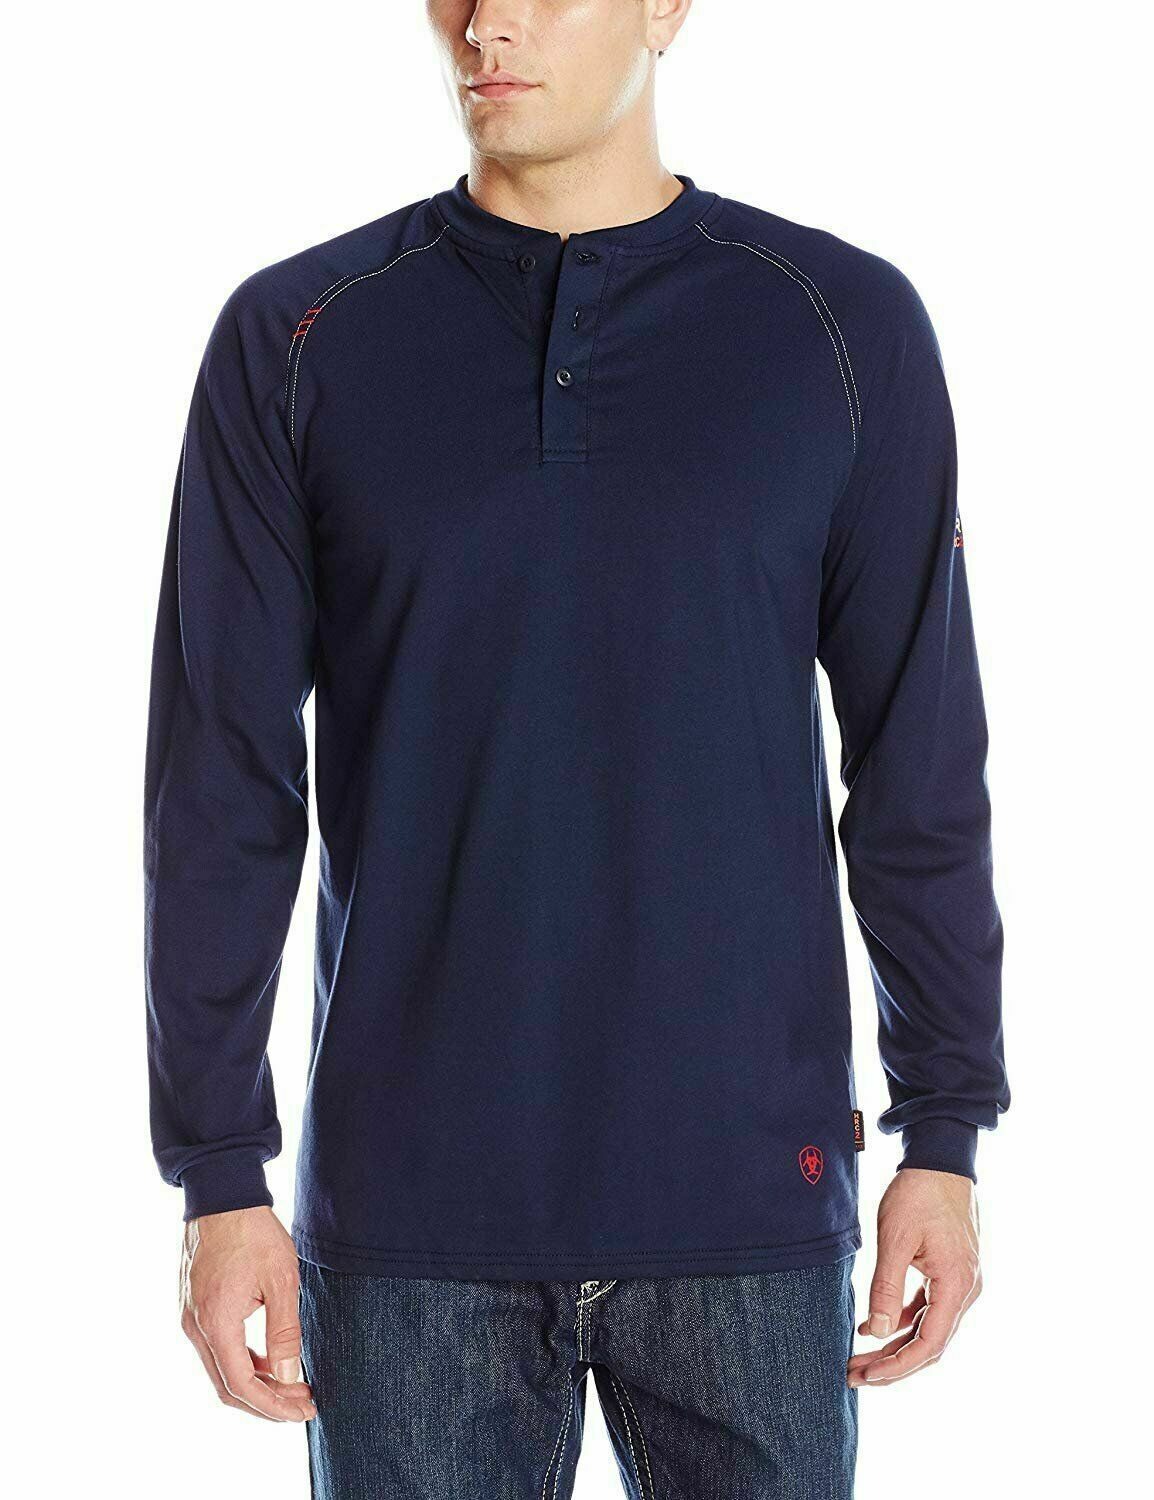 Ariat Men's Navy FR Long-Sleeve Henley Shirt